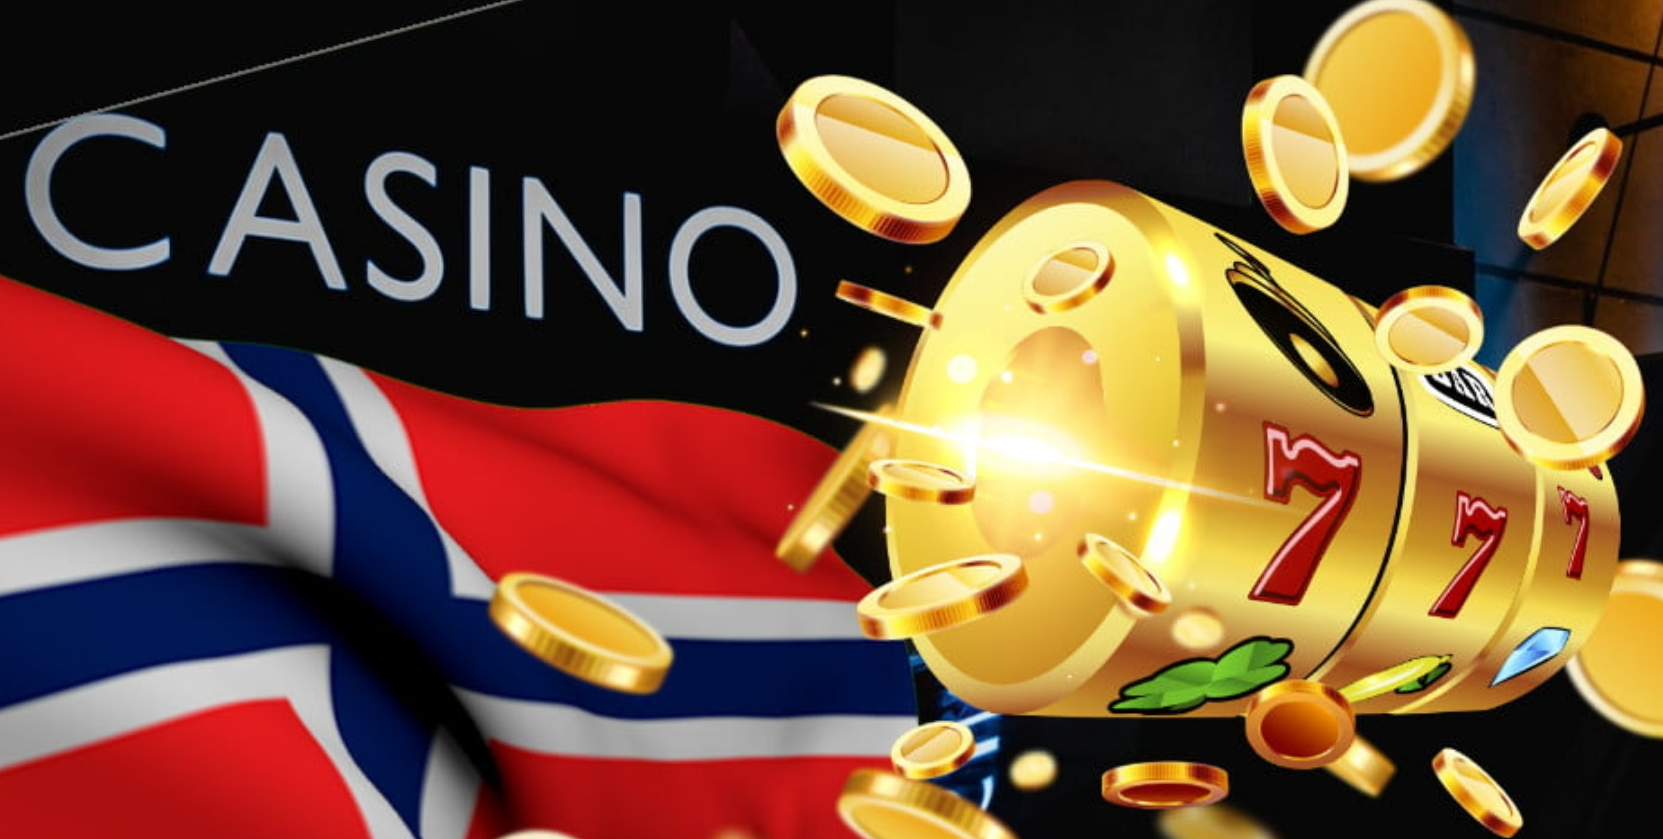 Nettkasino Norge: Eksklusive bonuser og gratisspinn